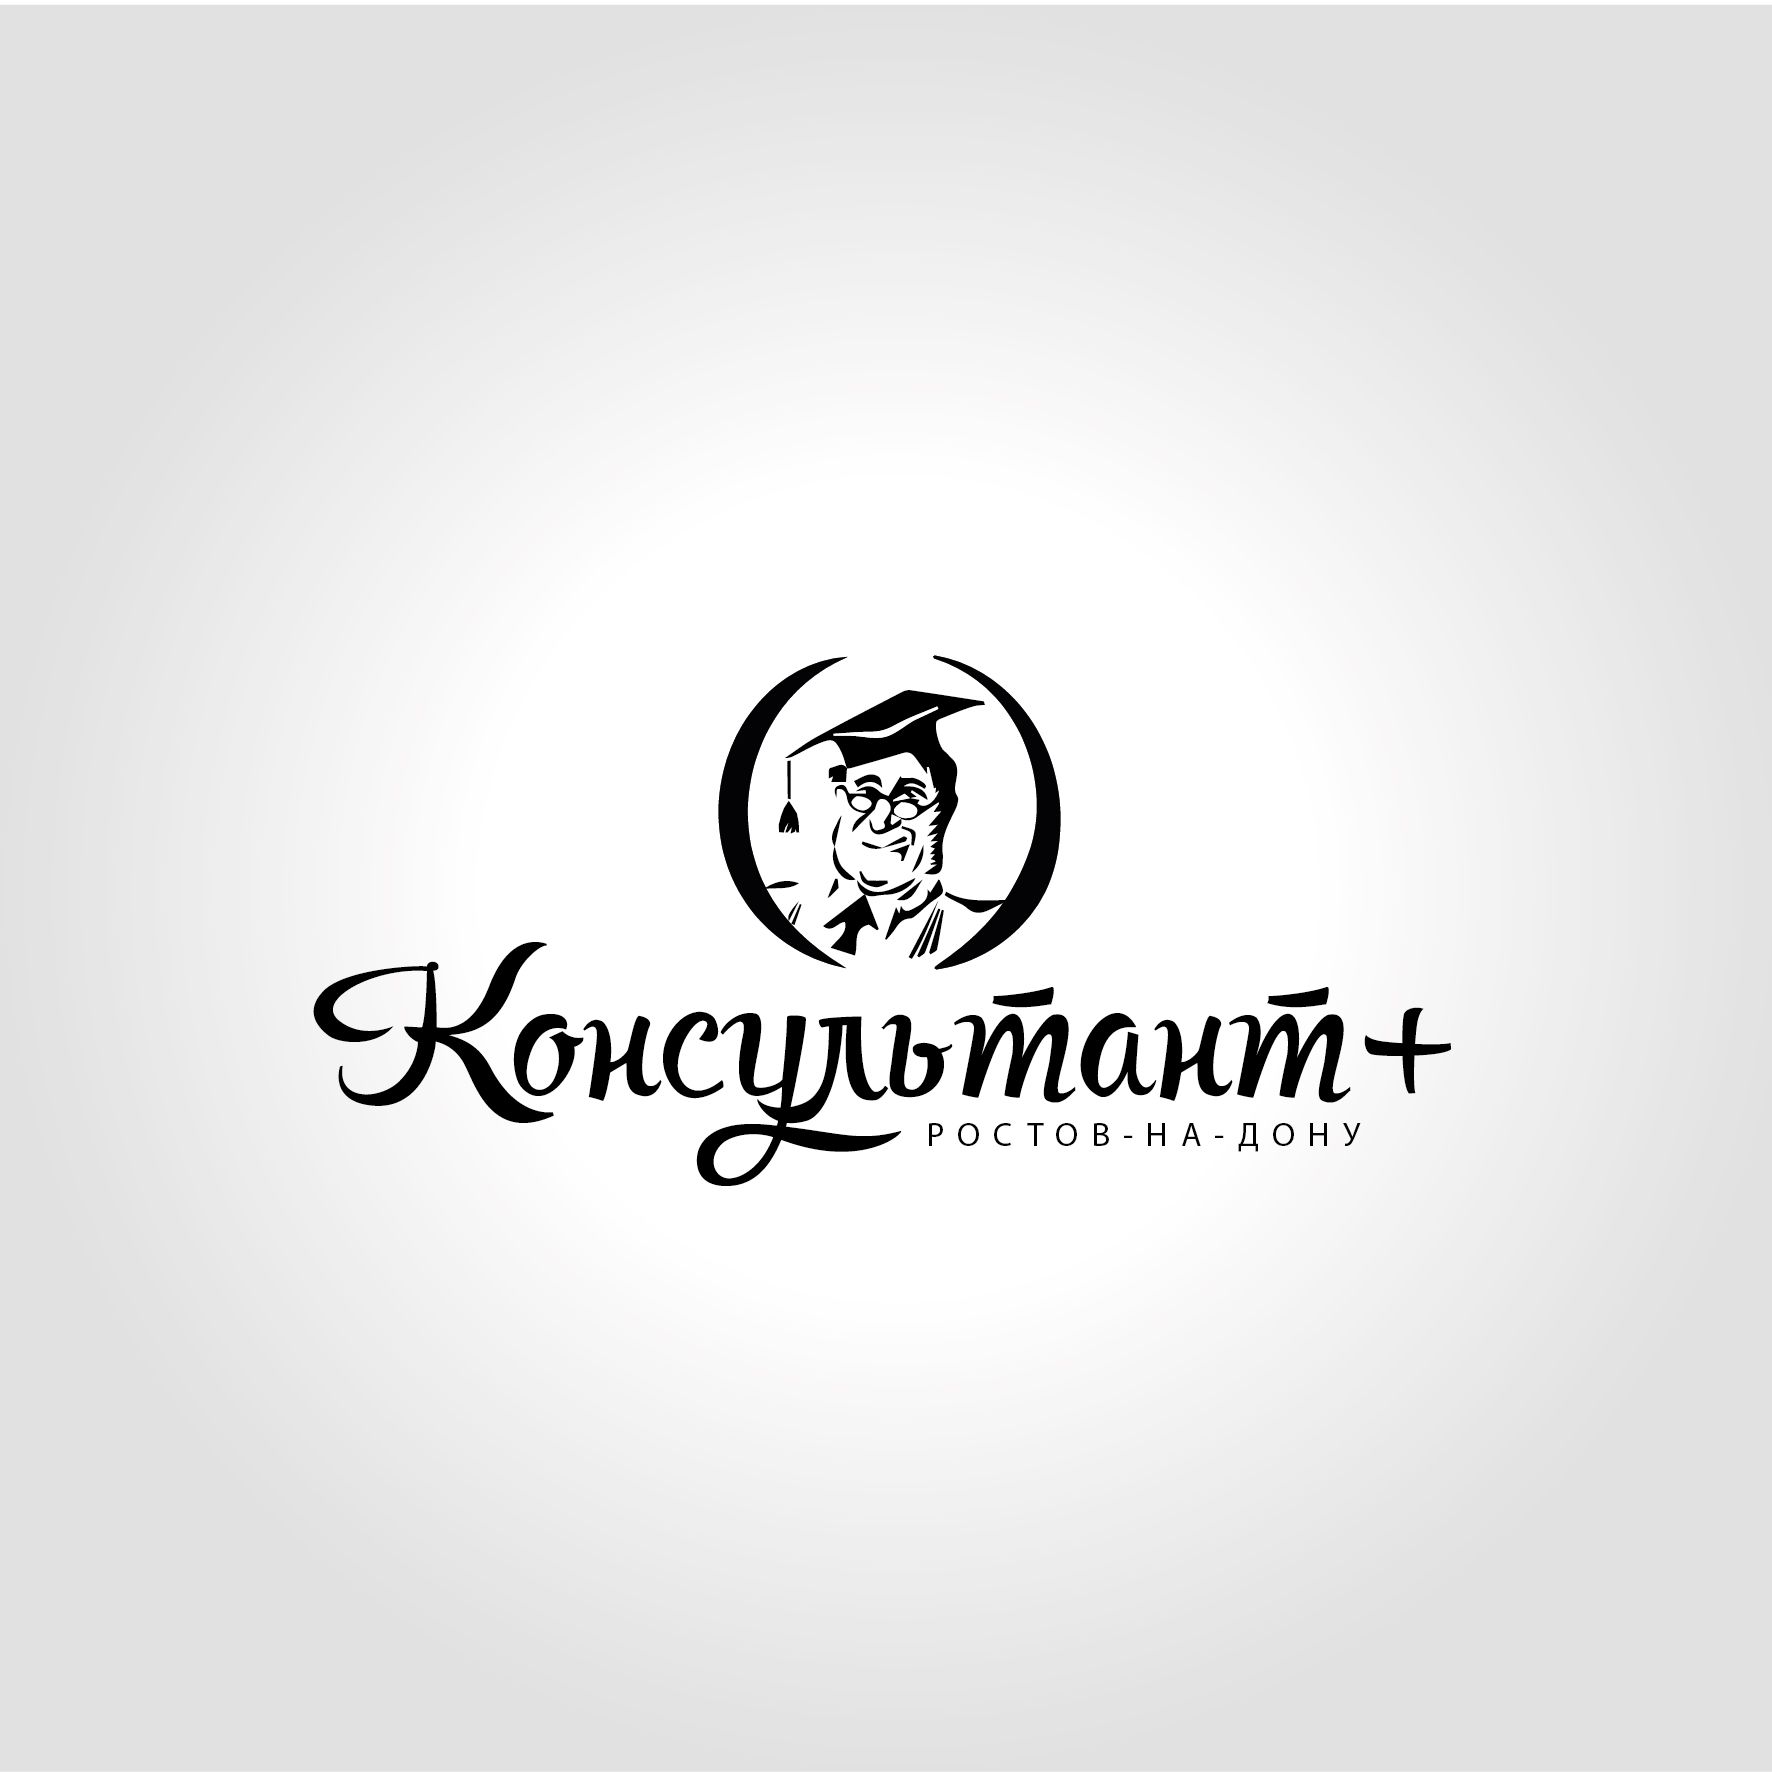 Лого и фирменный стиль для КонсультантПлюс-Ростов-на-Дону - дизайнер Olga_diz